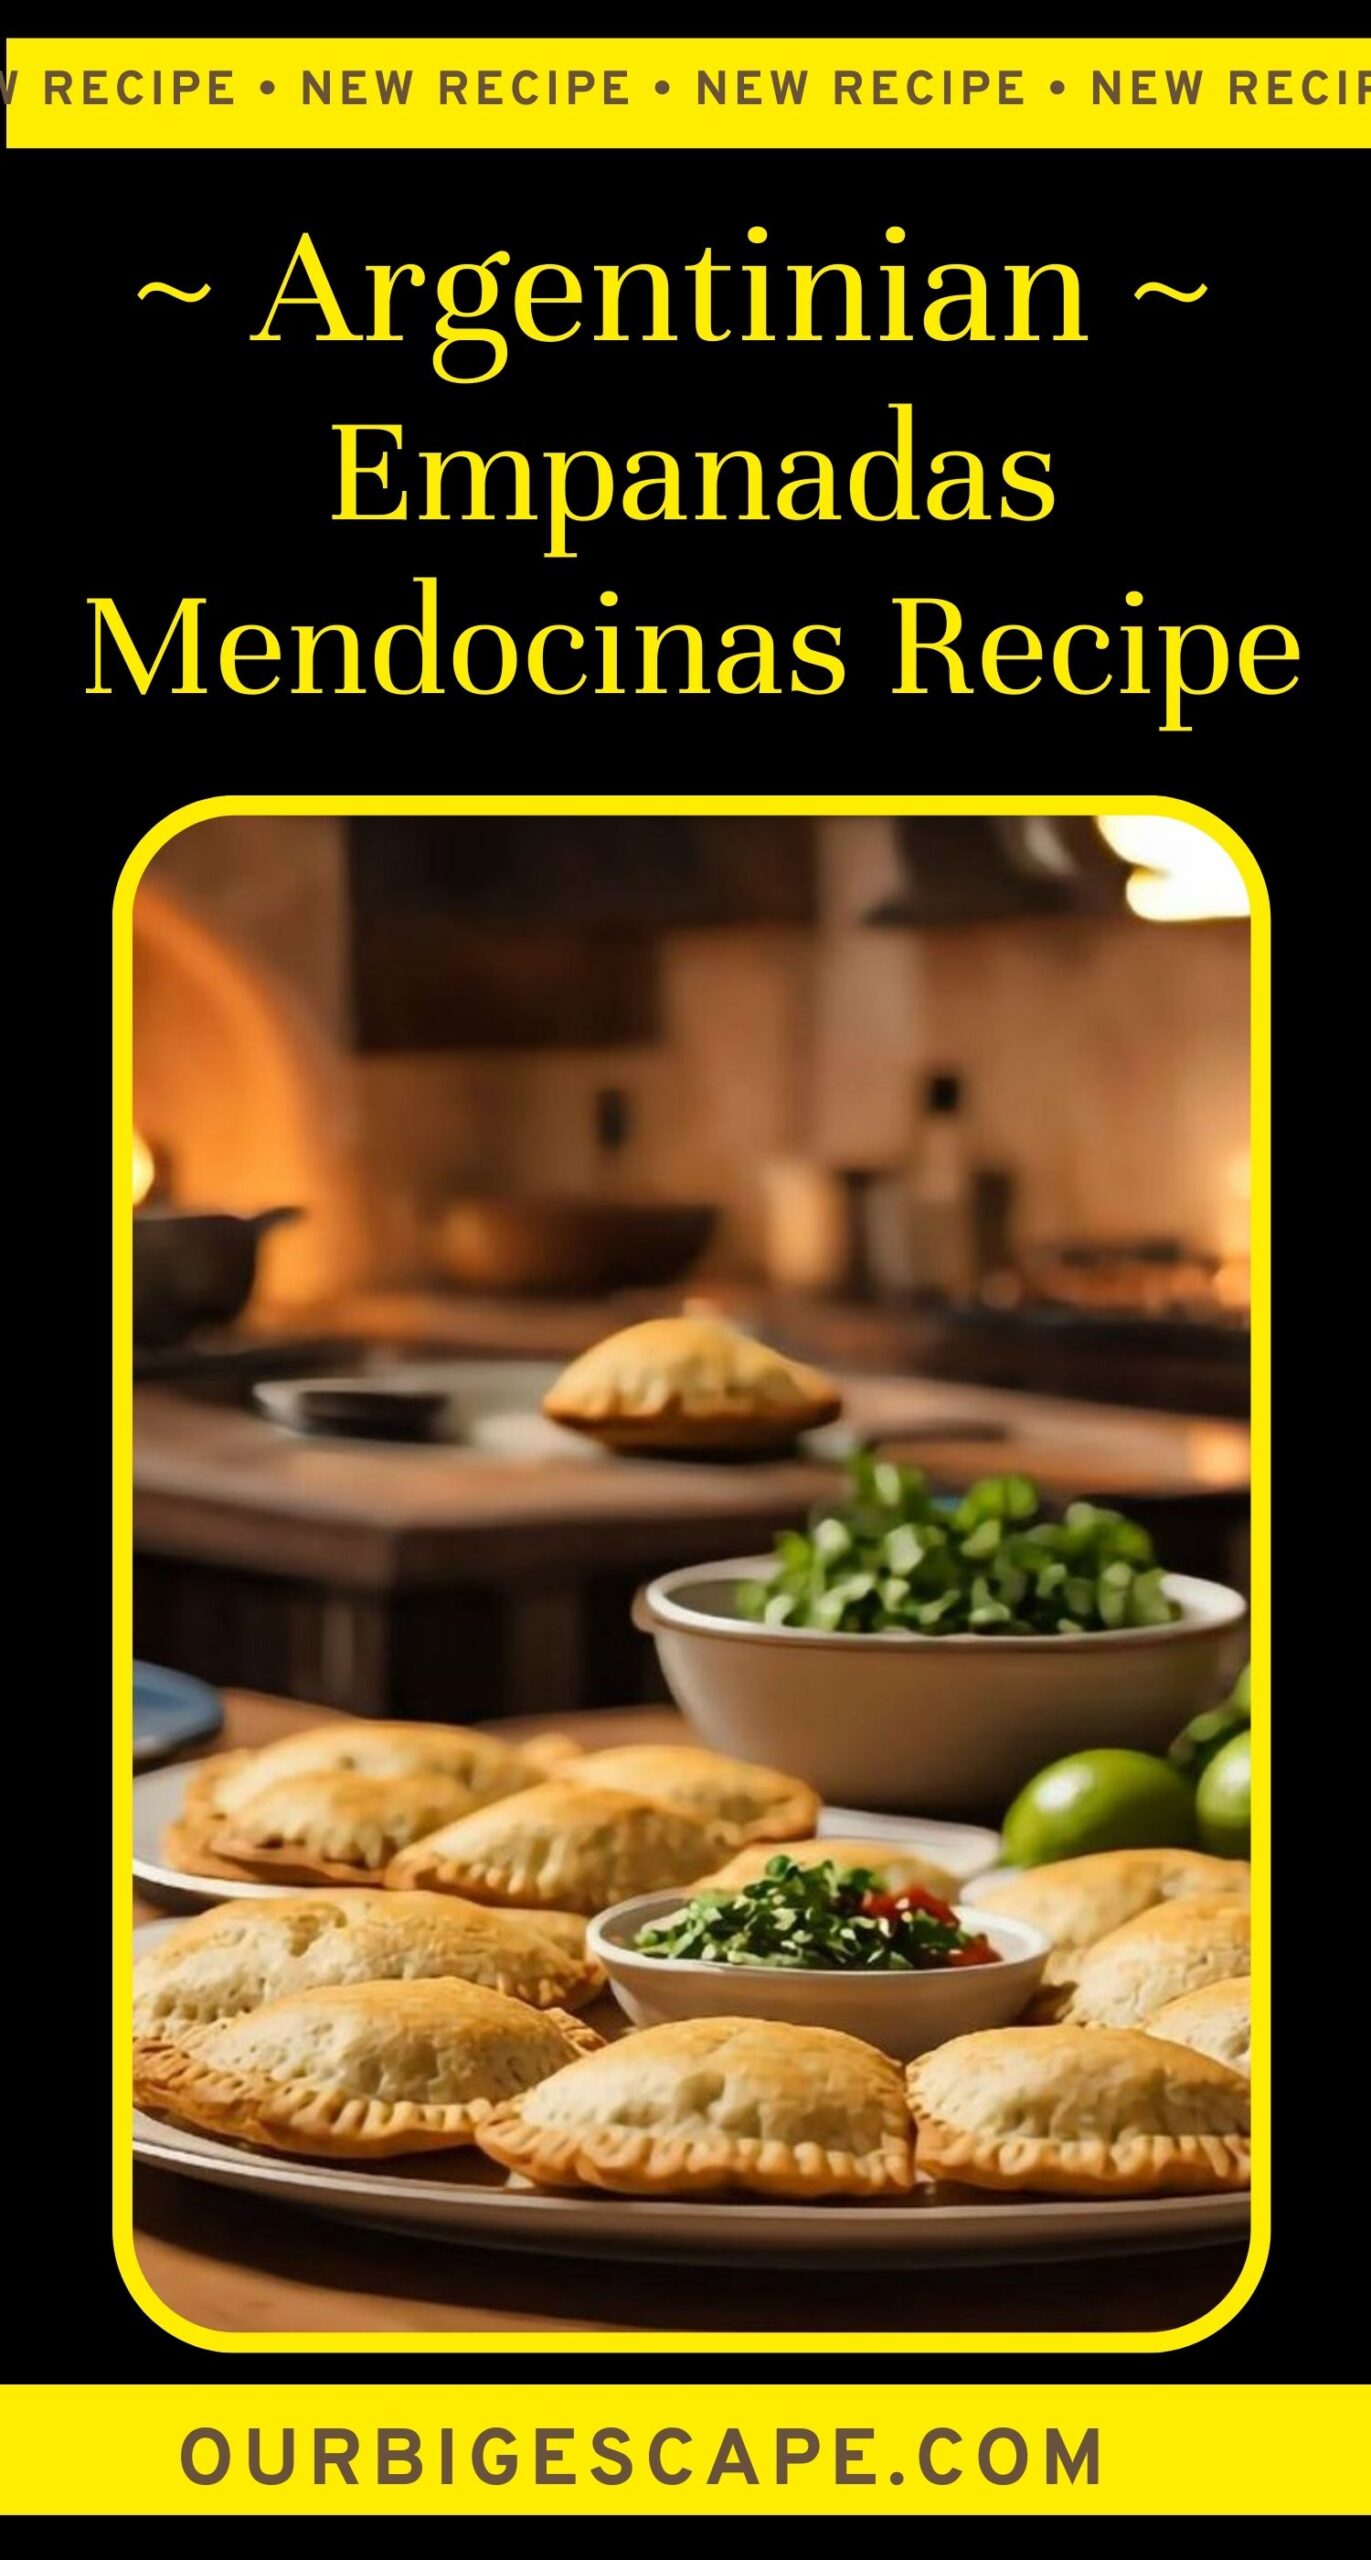 25. Argentinian Empanadas Mendocinas Recipe